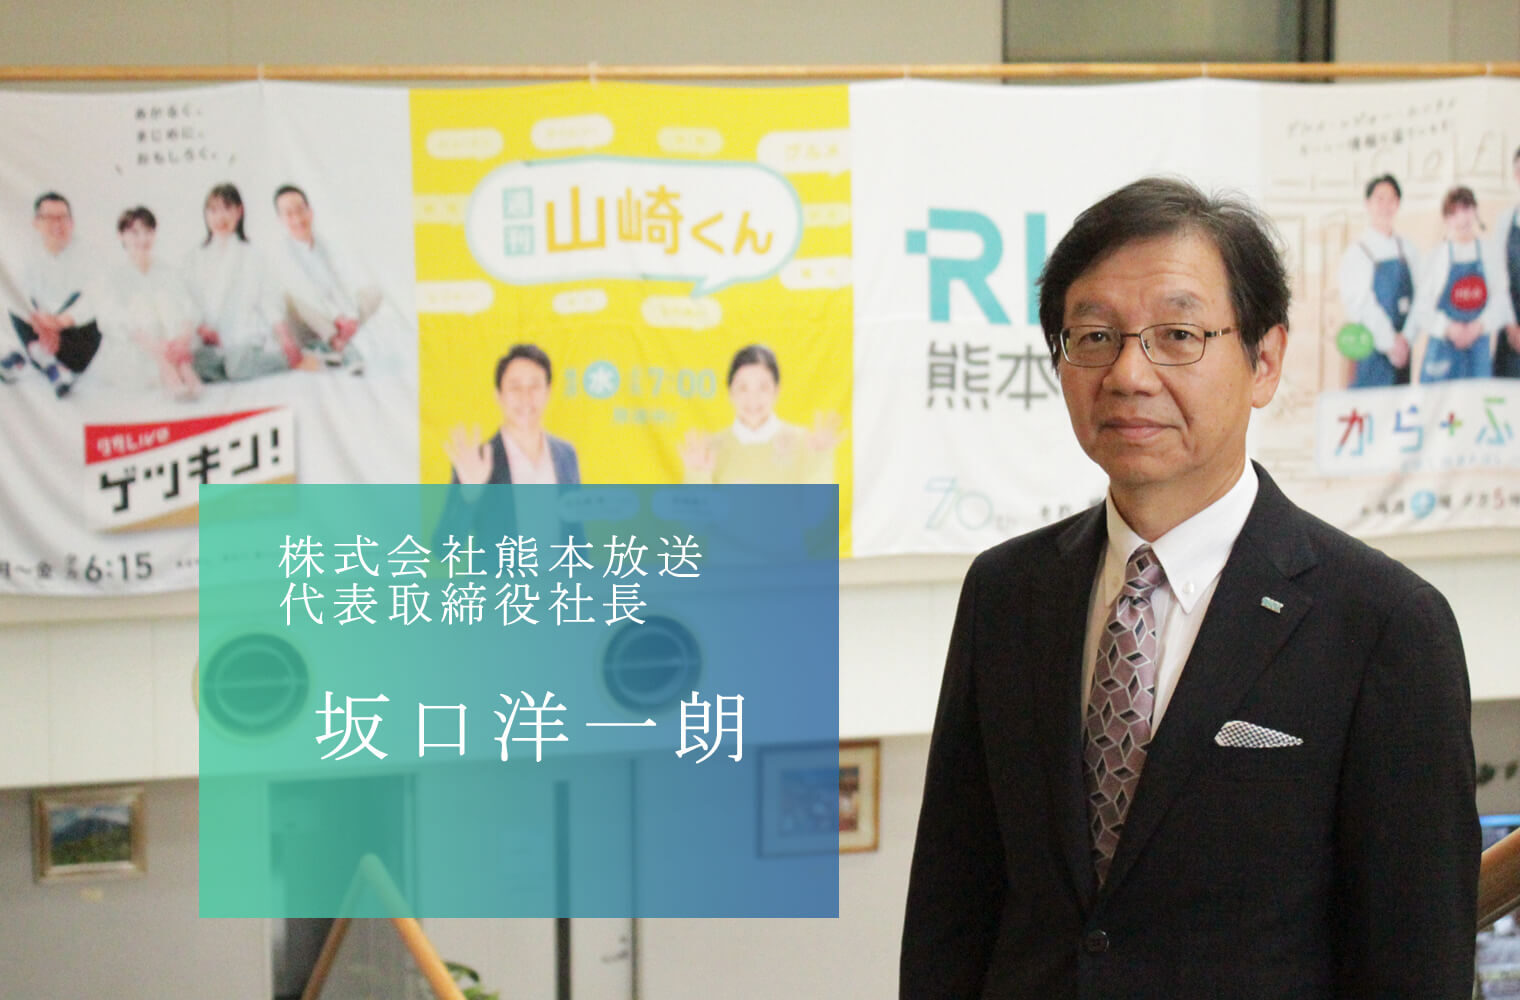 「正しい情報で人々に安心を。楽しさと感動で熊本を明るく。」を実践する、株式会社熊本放送の坂口社長